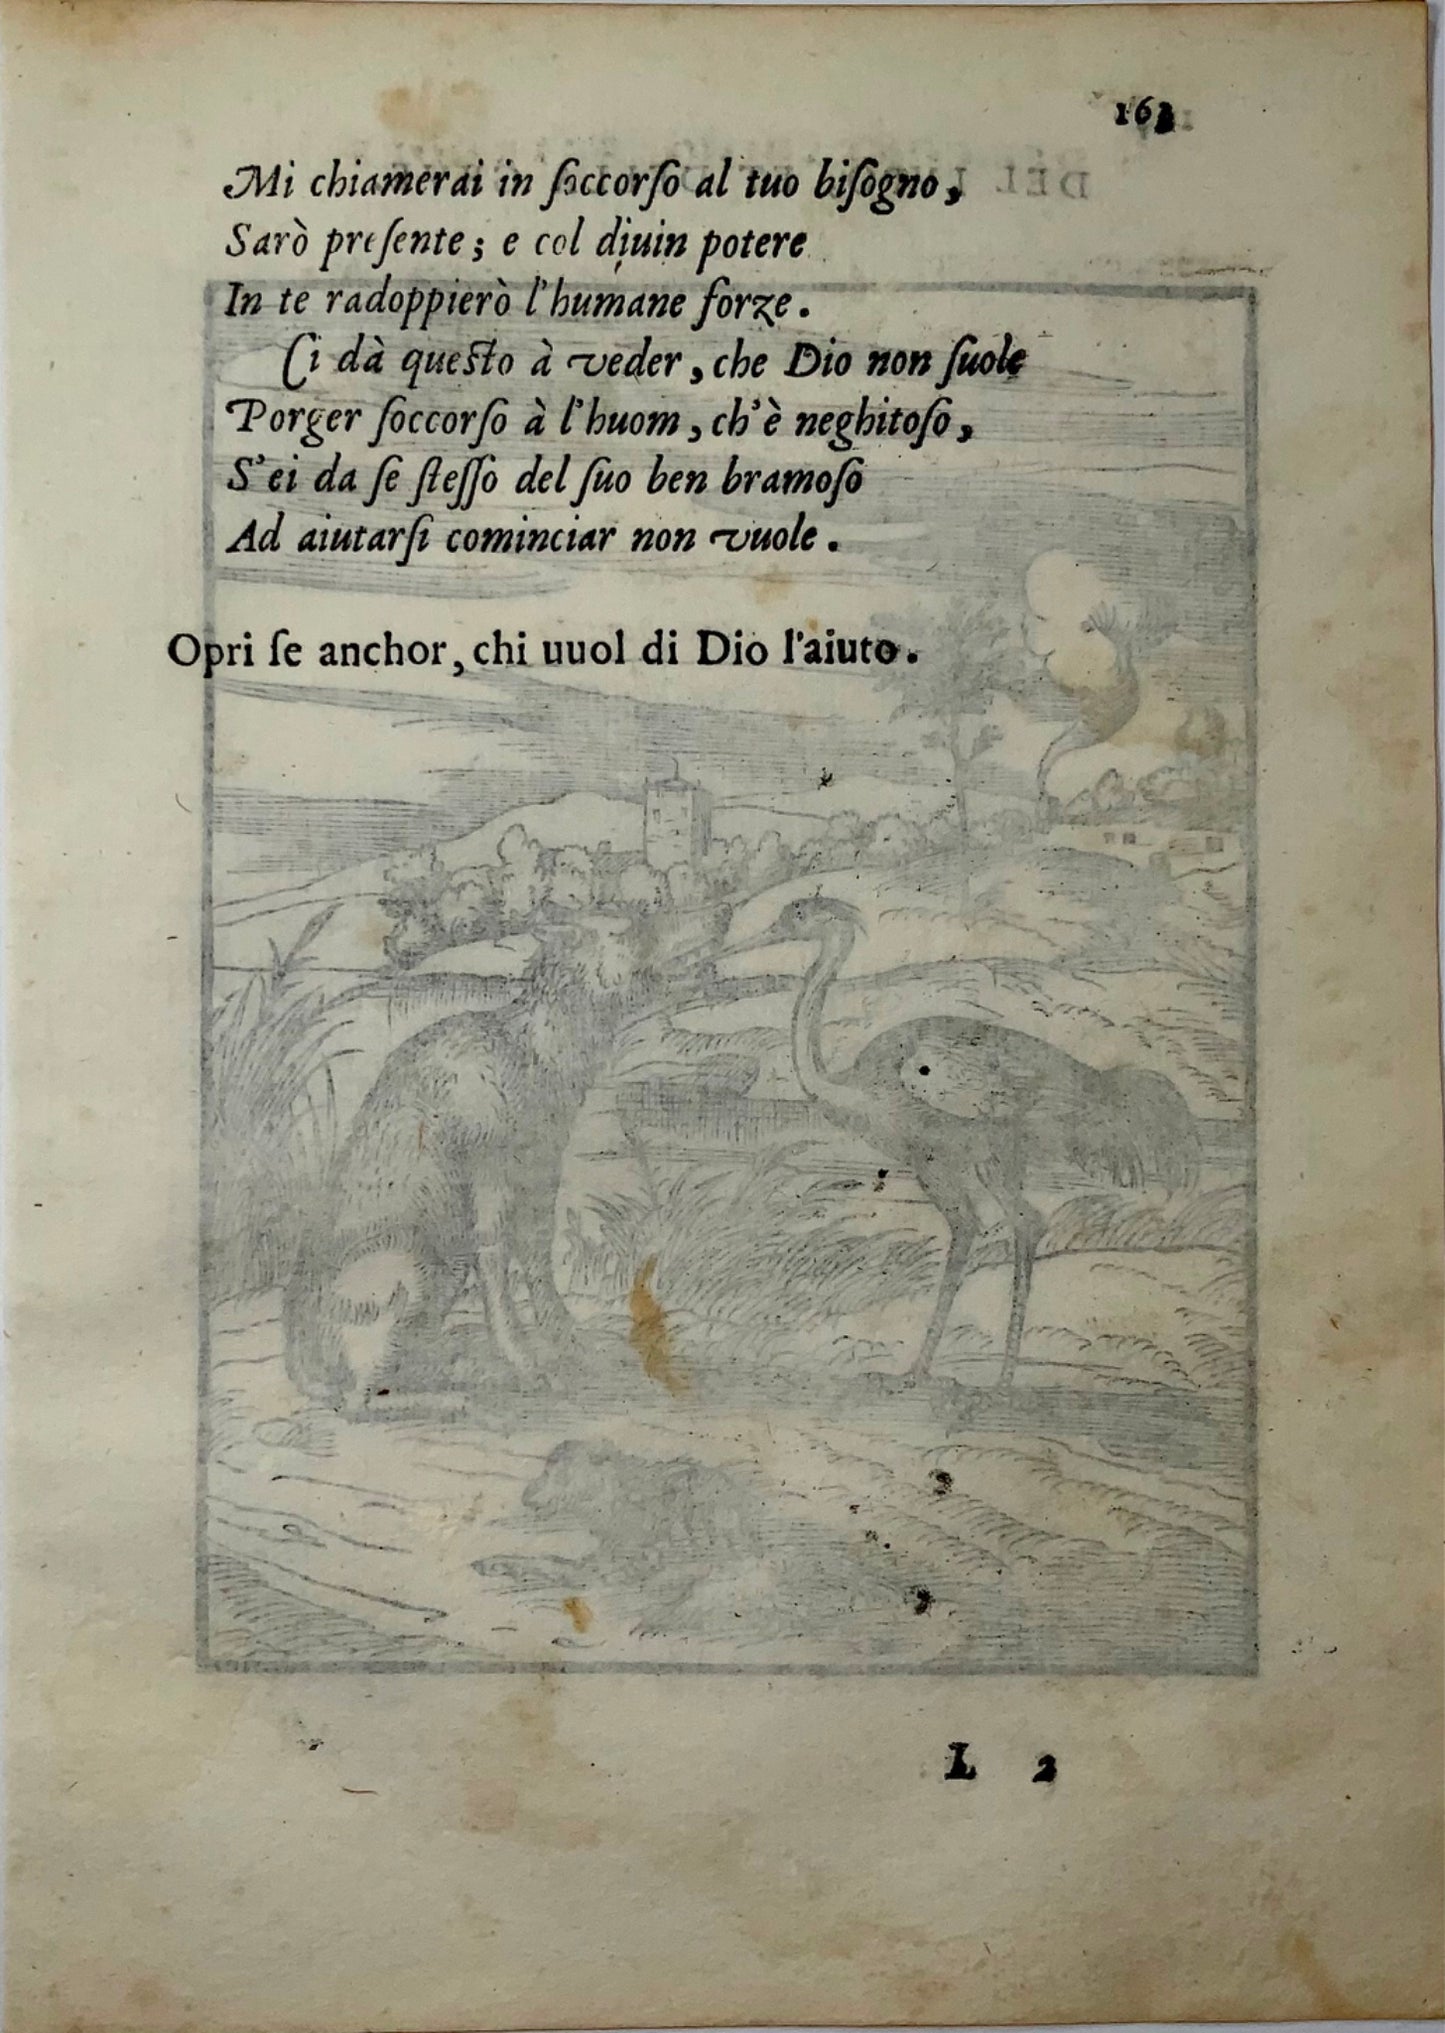 1570 Le loup et le héron, Verdizotti (né en 1525), gravure sur bois, fable, art